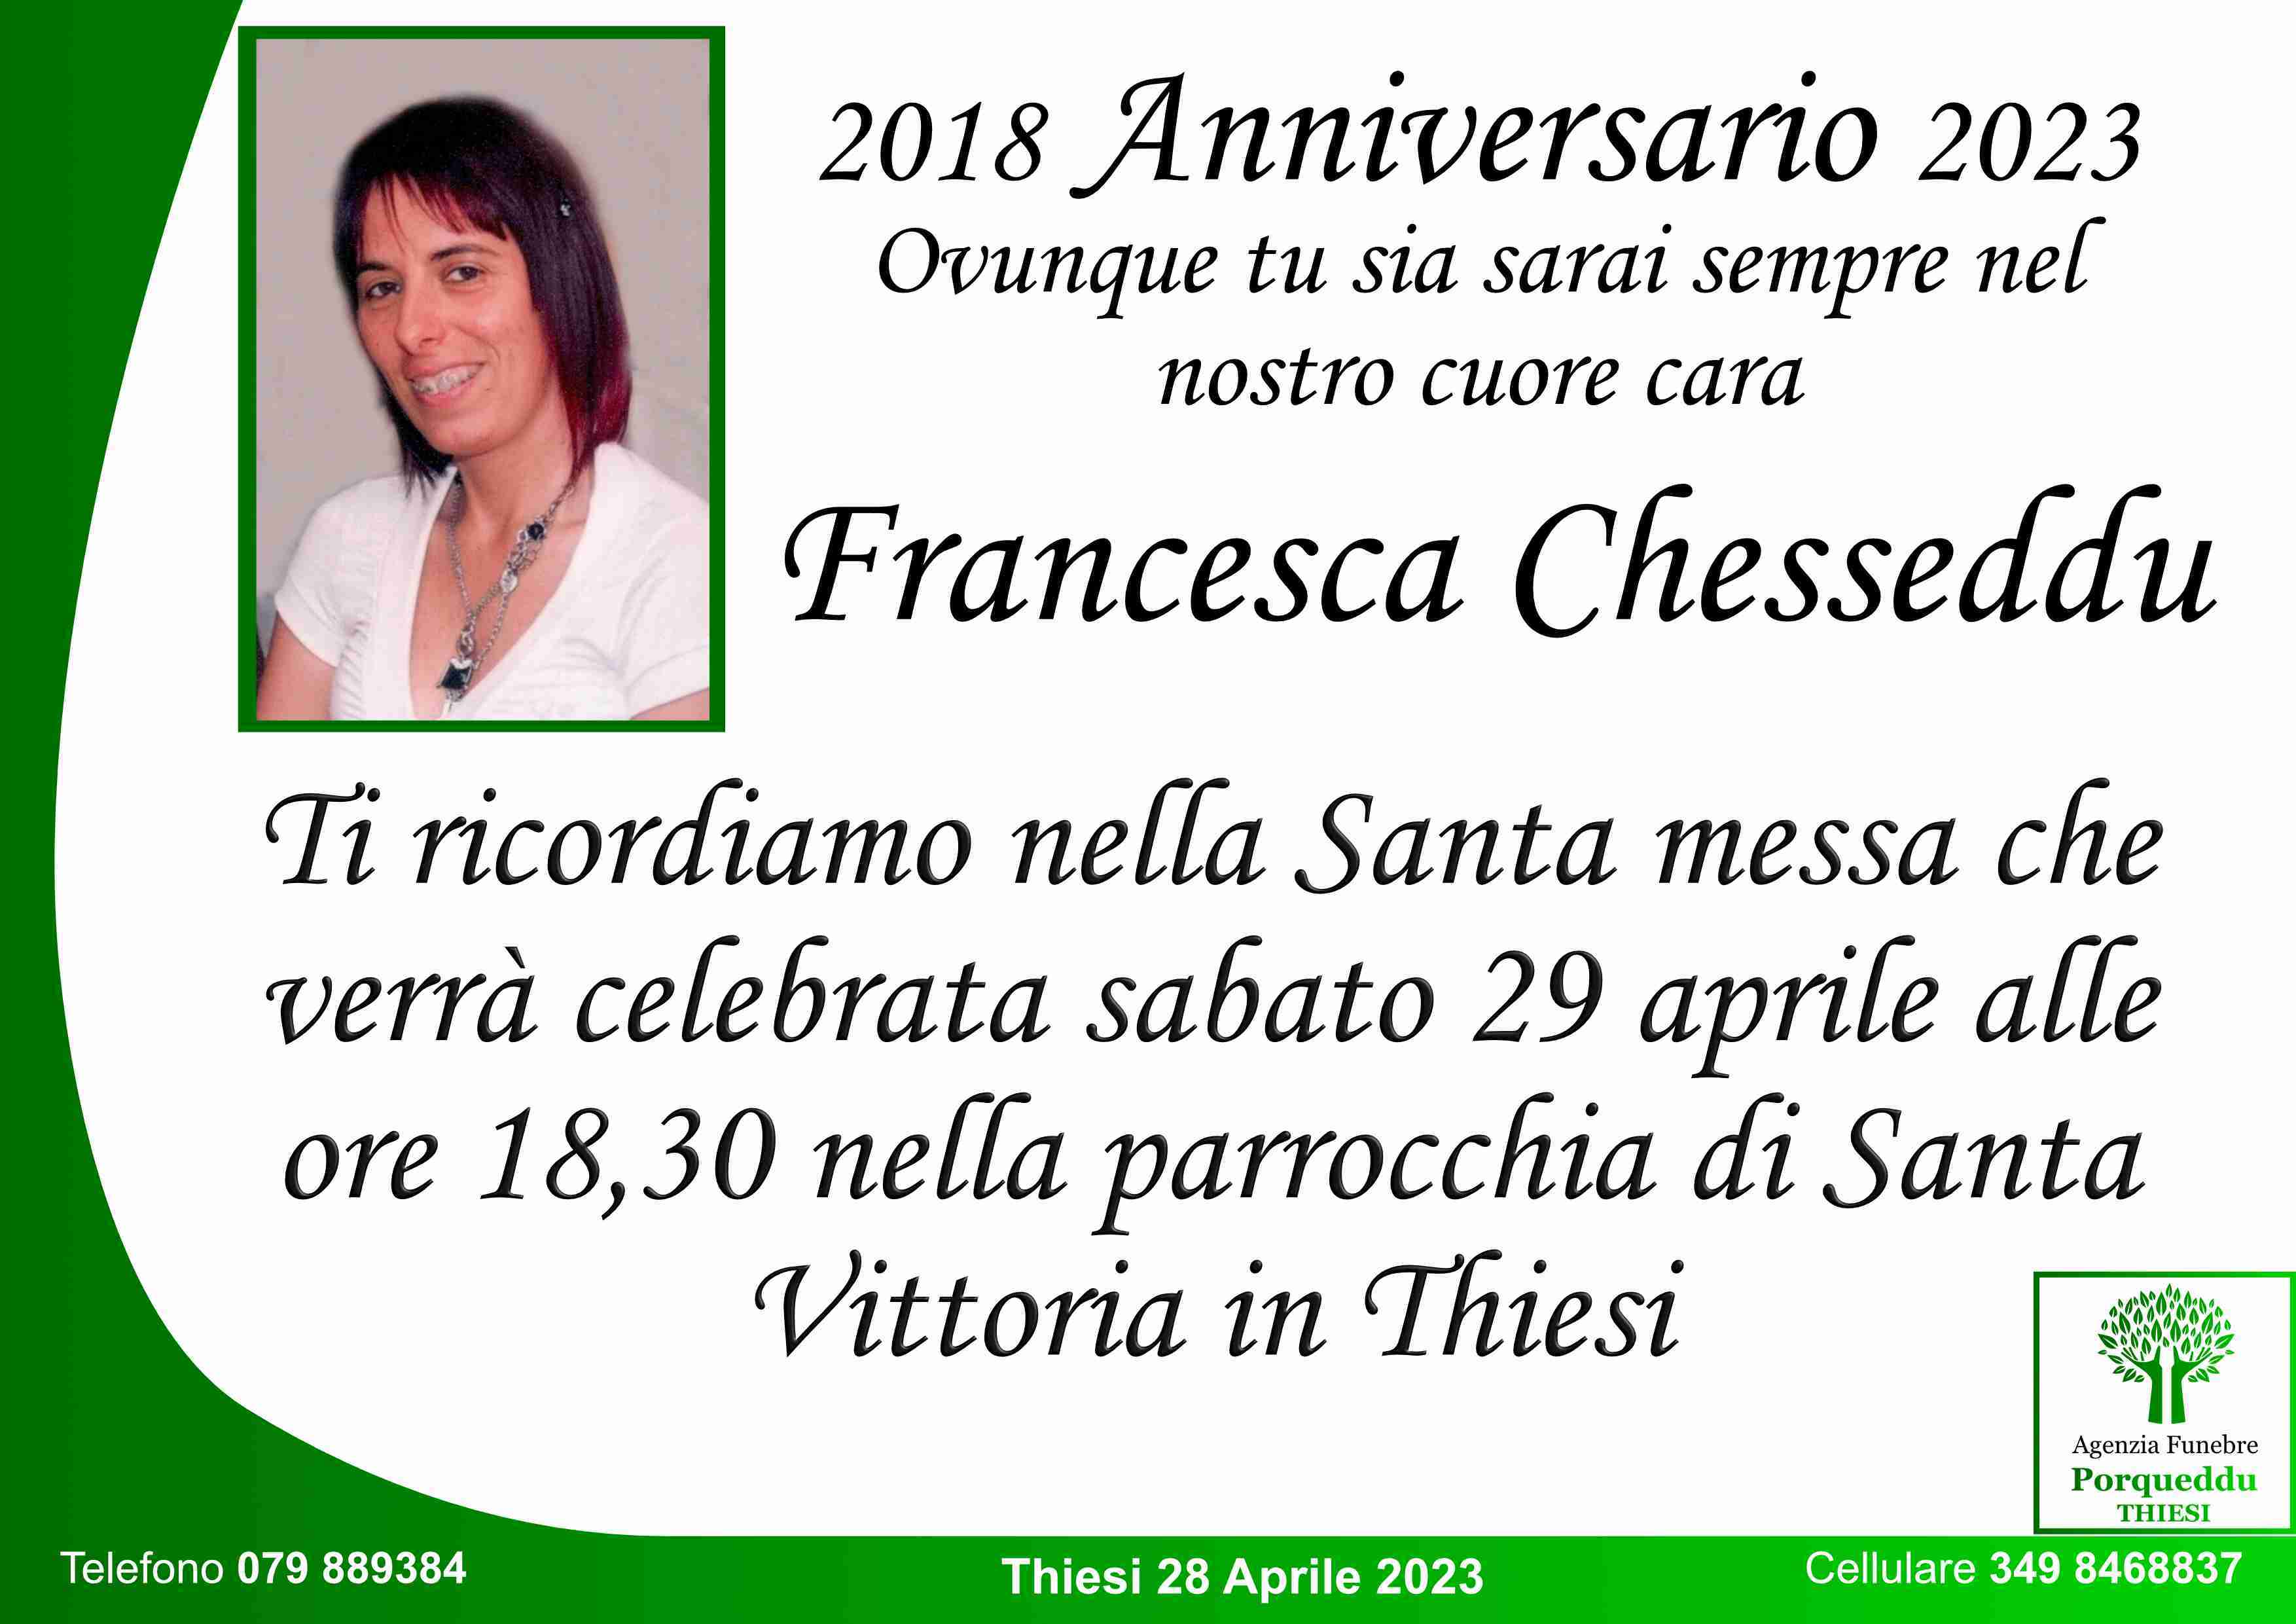 Francesca Chesseddu